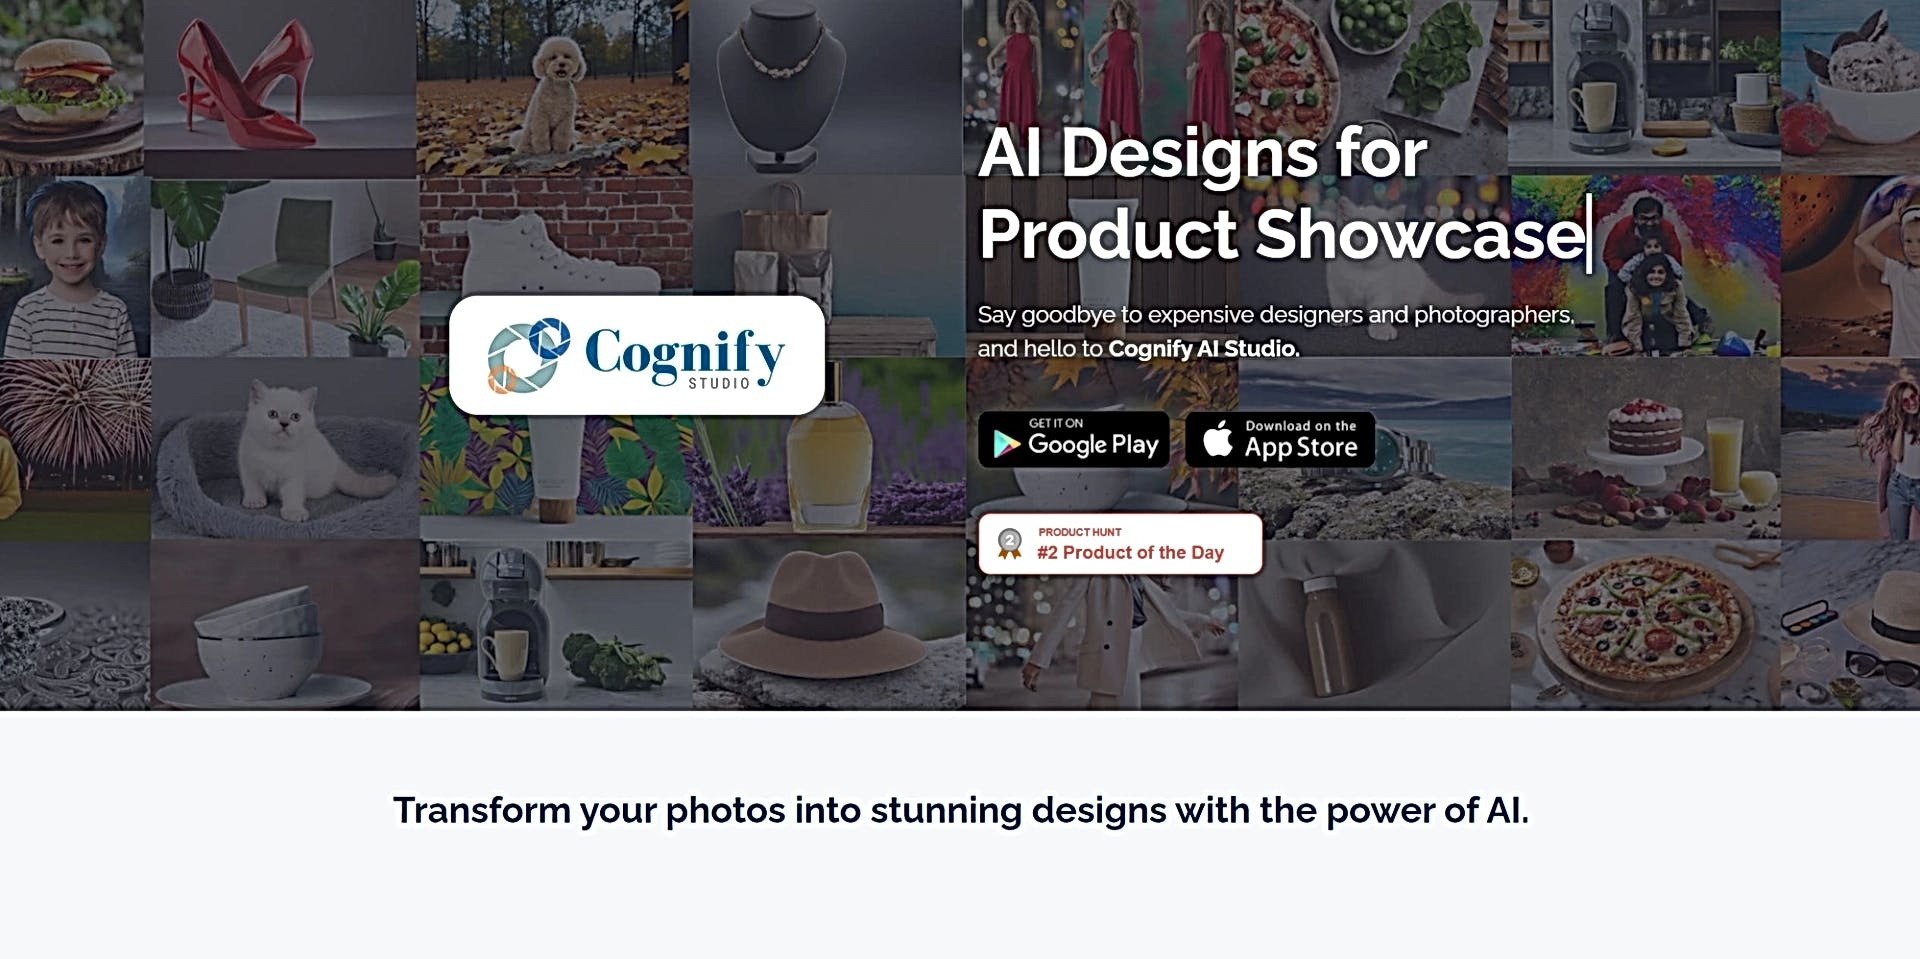 Cognify Studio featured